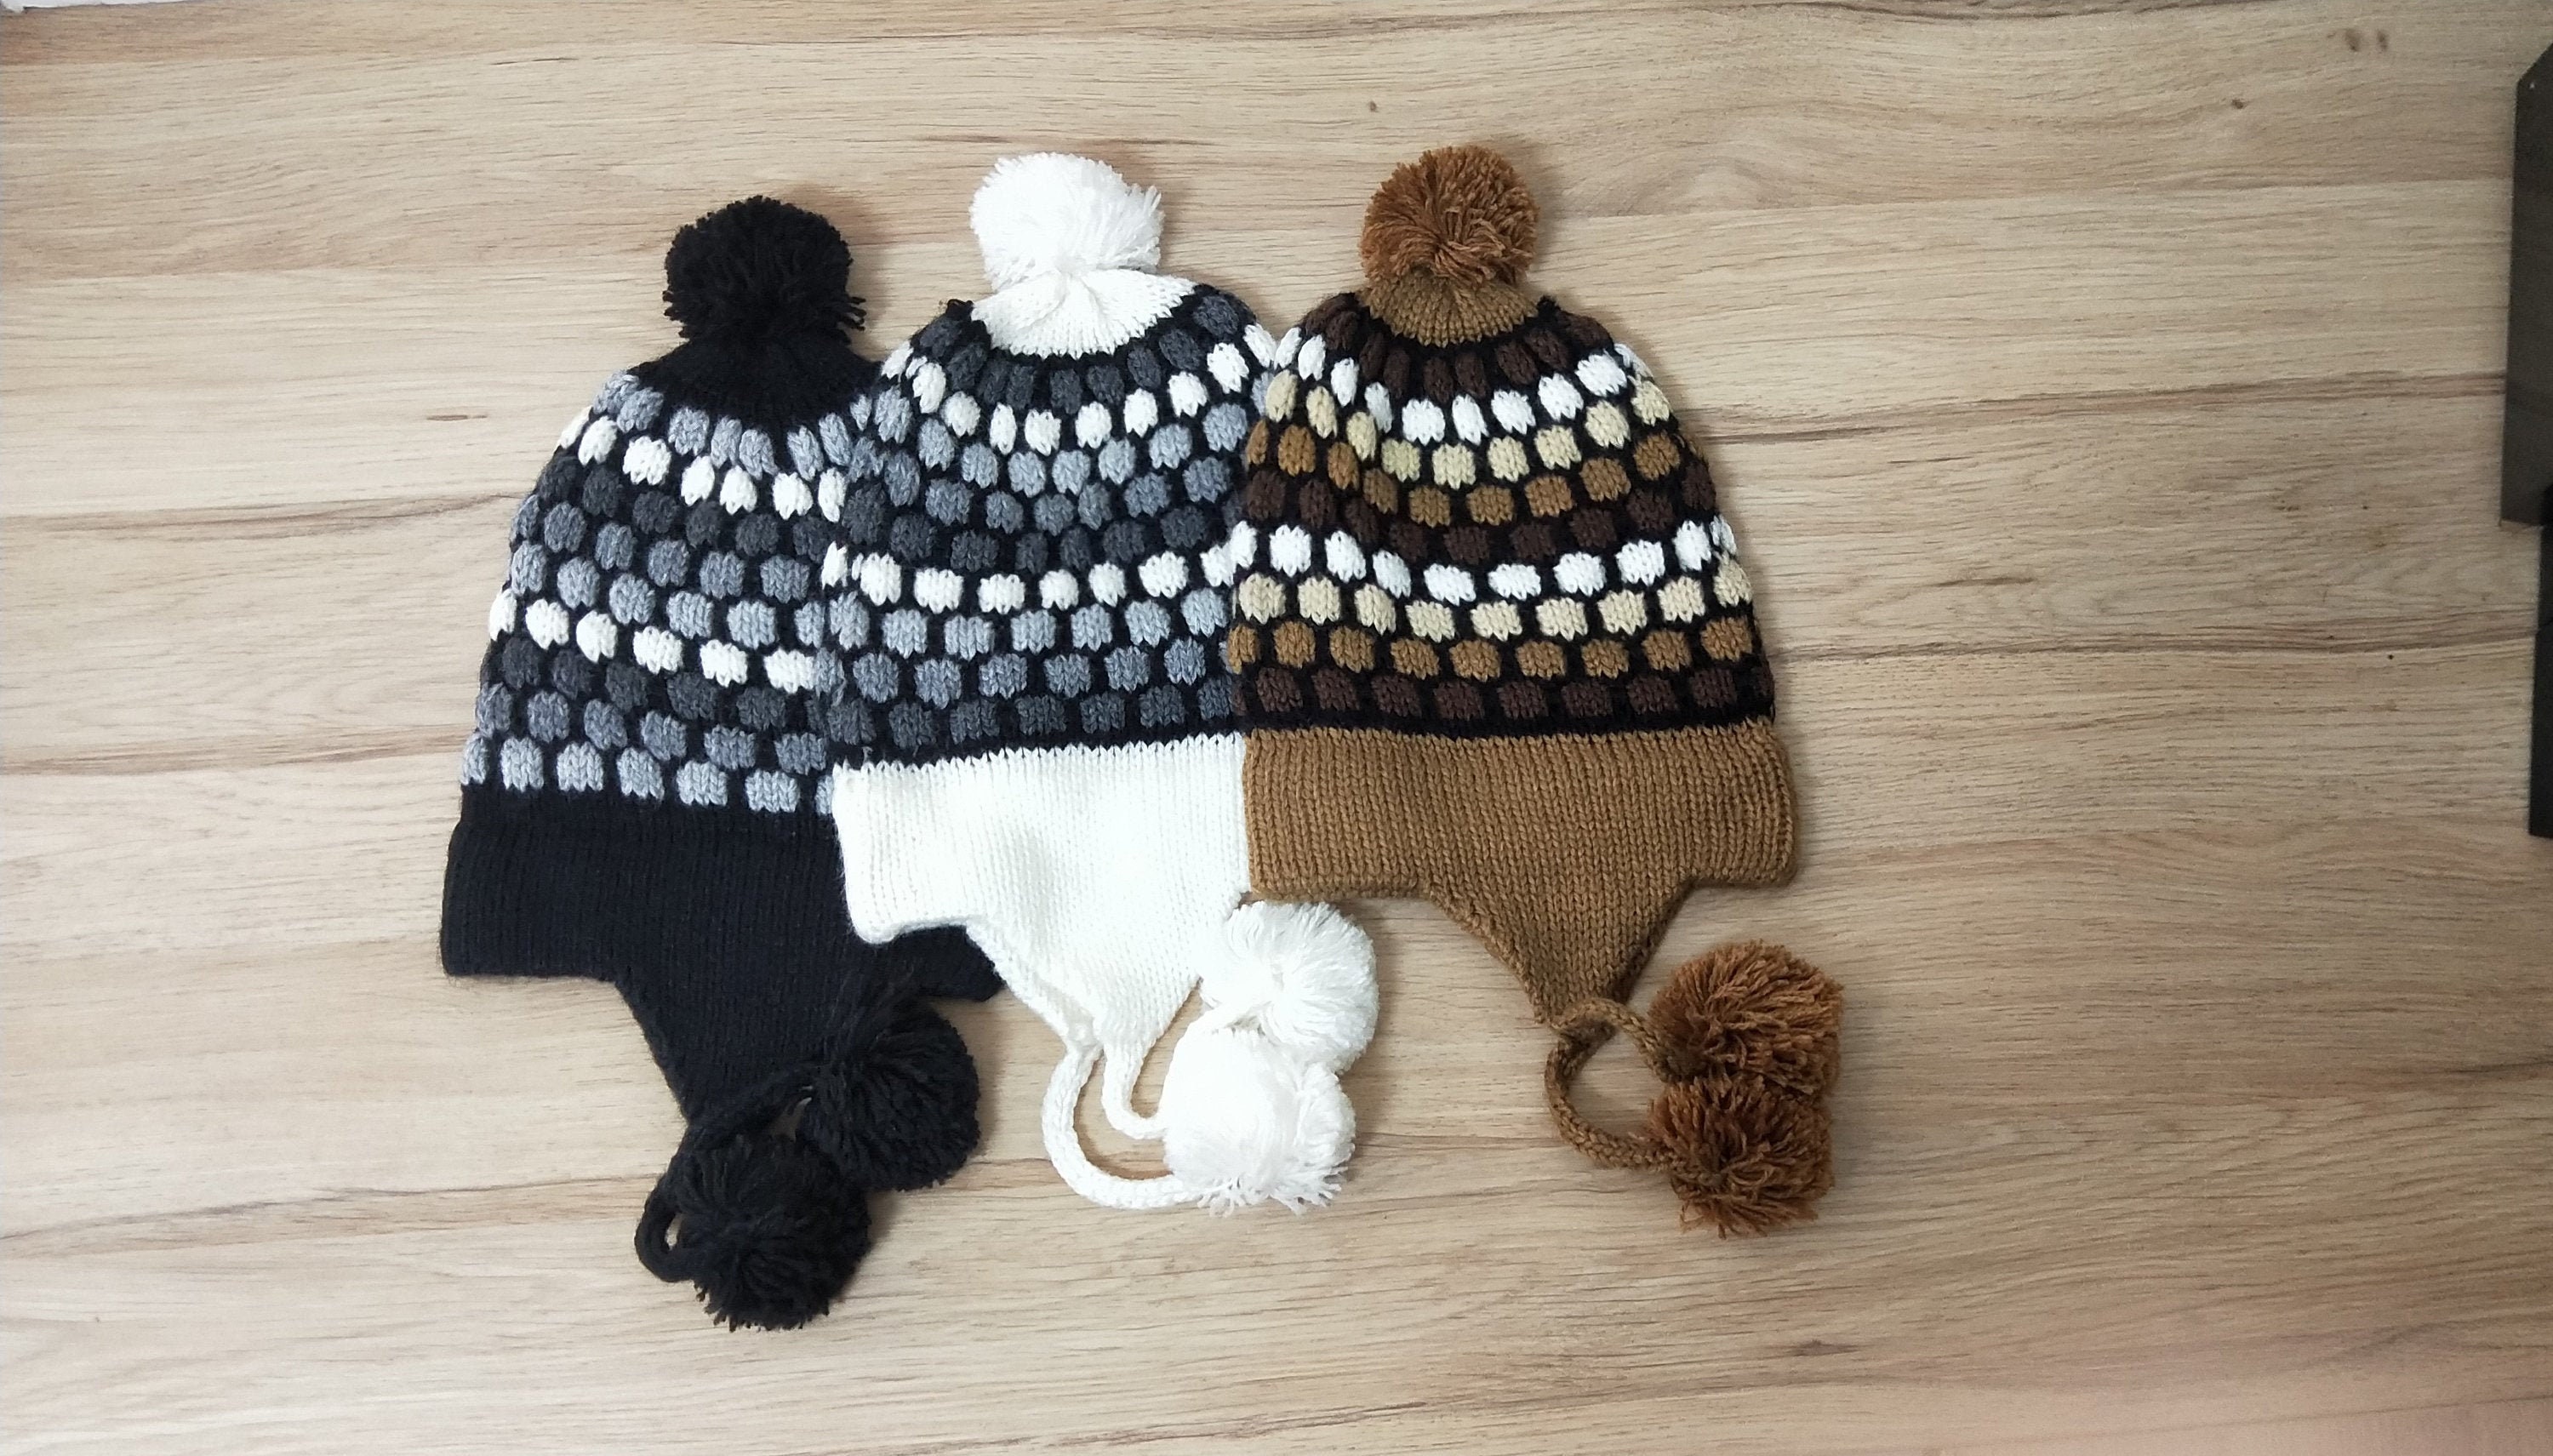 Puzzled Stuffed Animal Plush Soft Warm Fleece One Size Peruvian Hat 